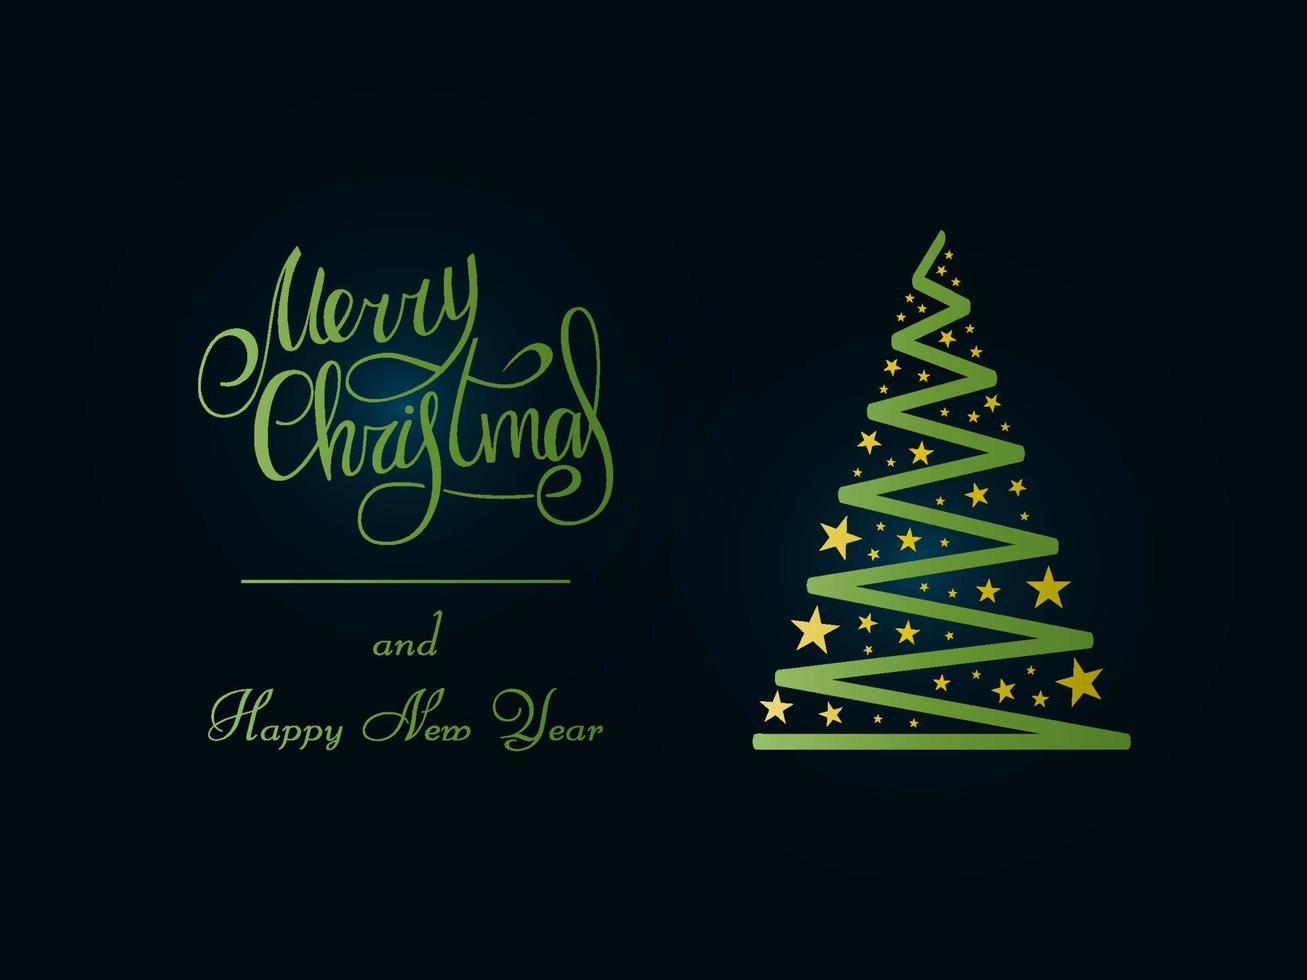 letras verdes escritas a mano sobre un fondo azul oscuro. árbol de navidad verde mágico con estrellas doradas. feliz navidad y próspero año nuevo 2022. vector